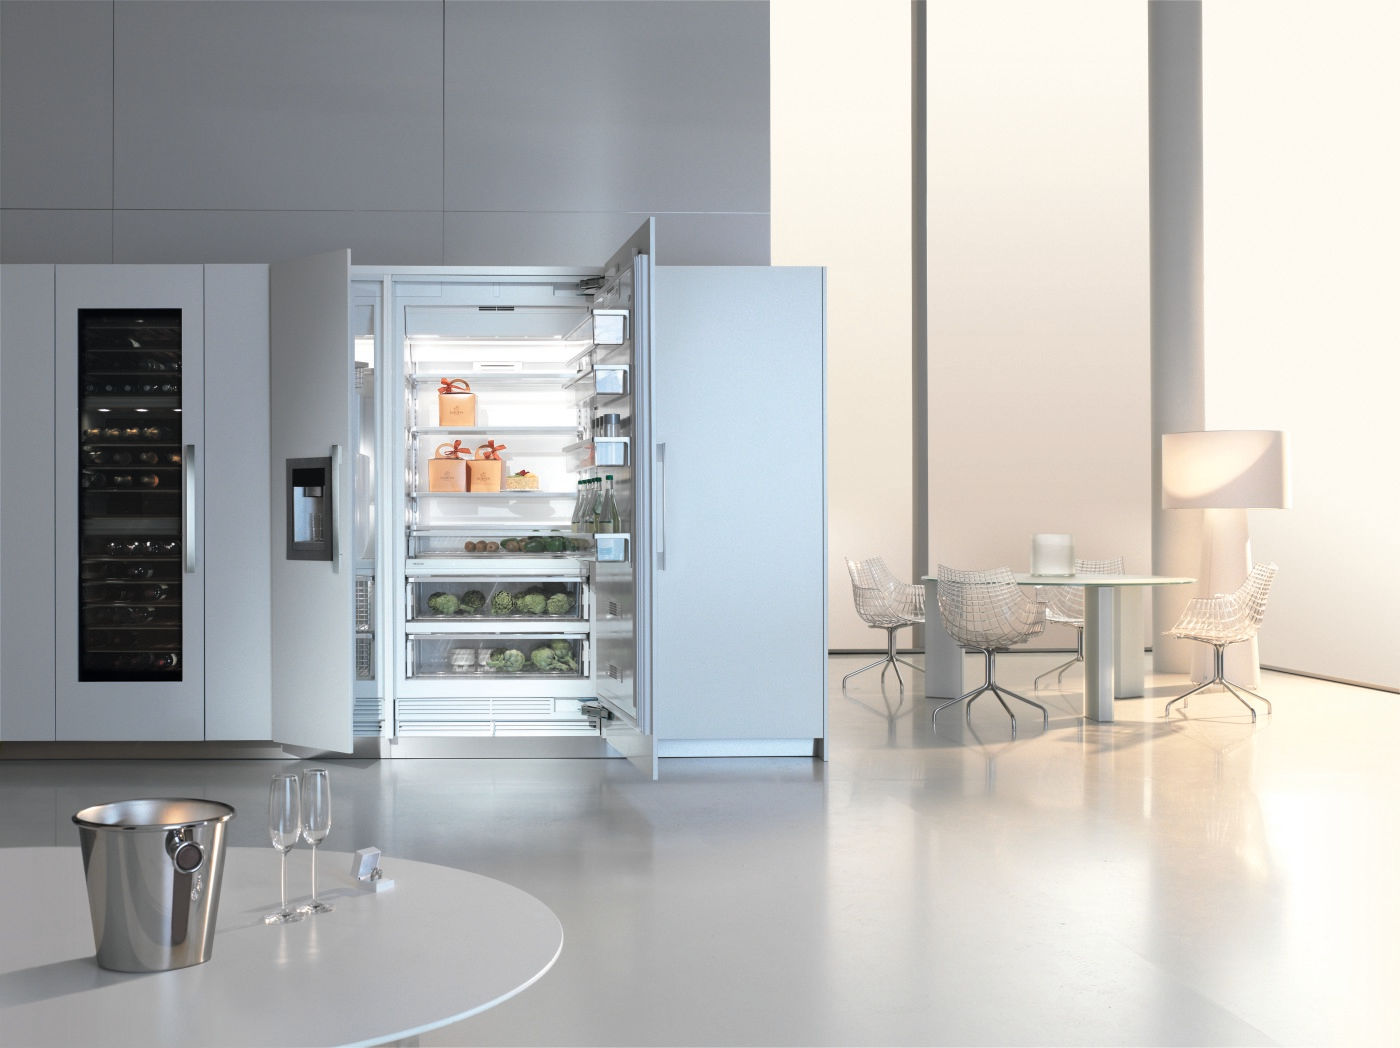 Miele Mastercool Refrigerator Hehku Nowoczesna kuchnia Urządzenia elektryczne